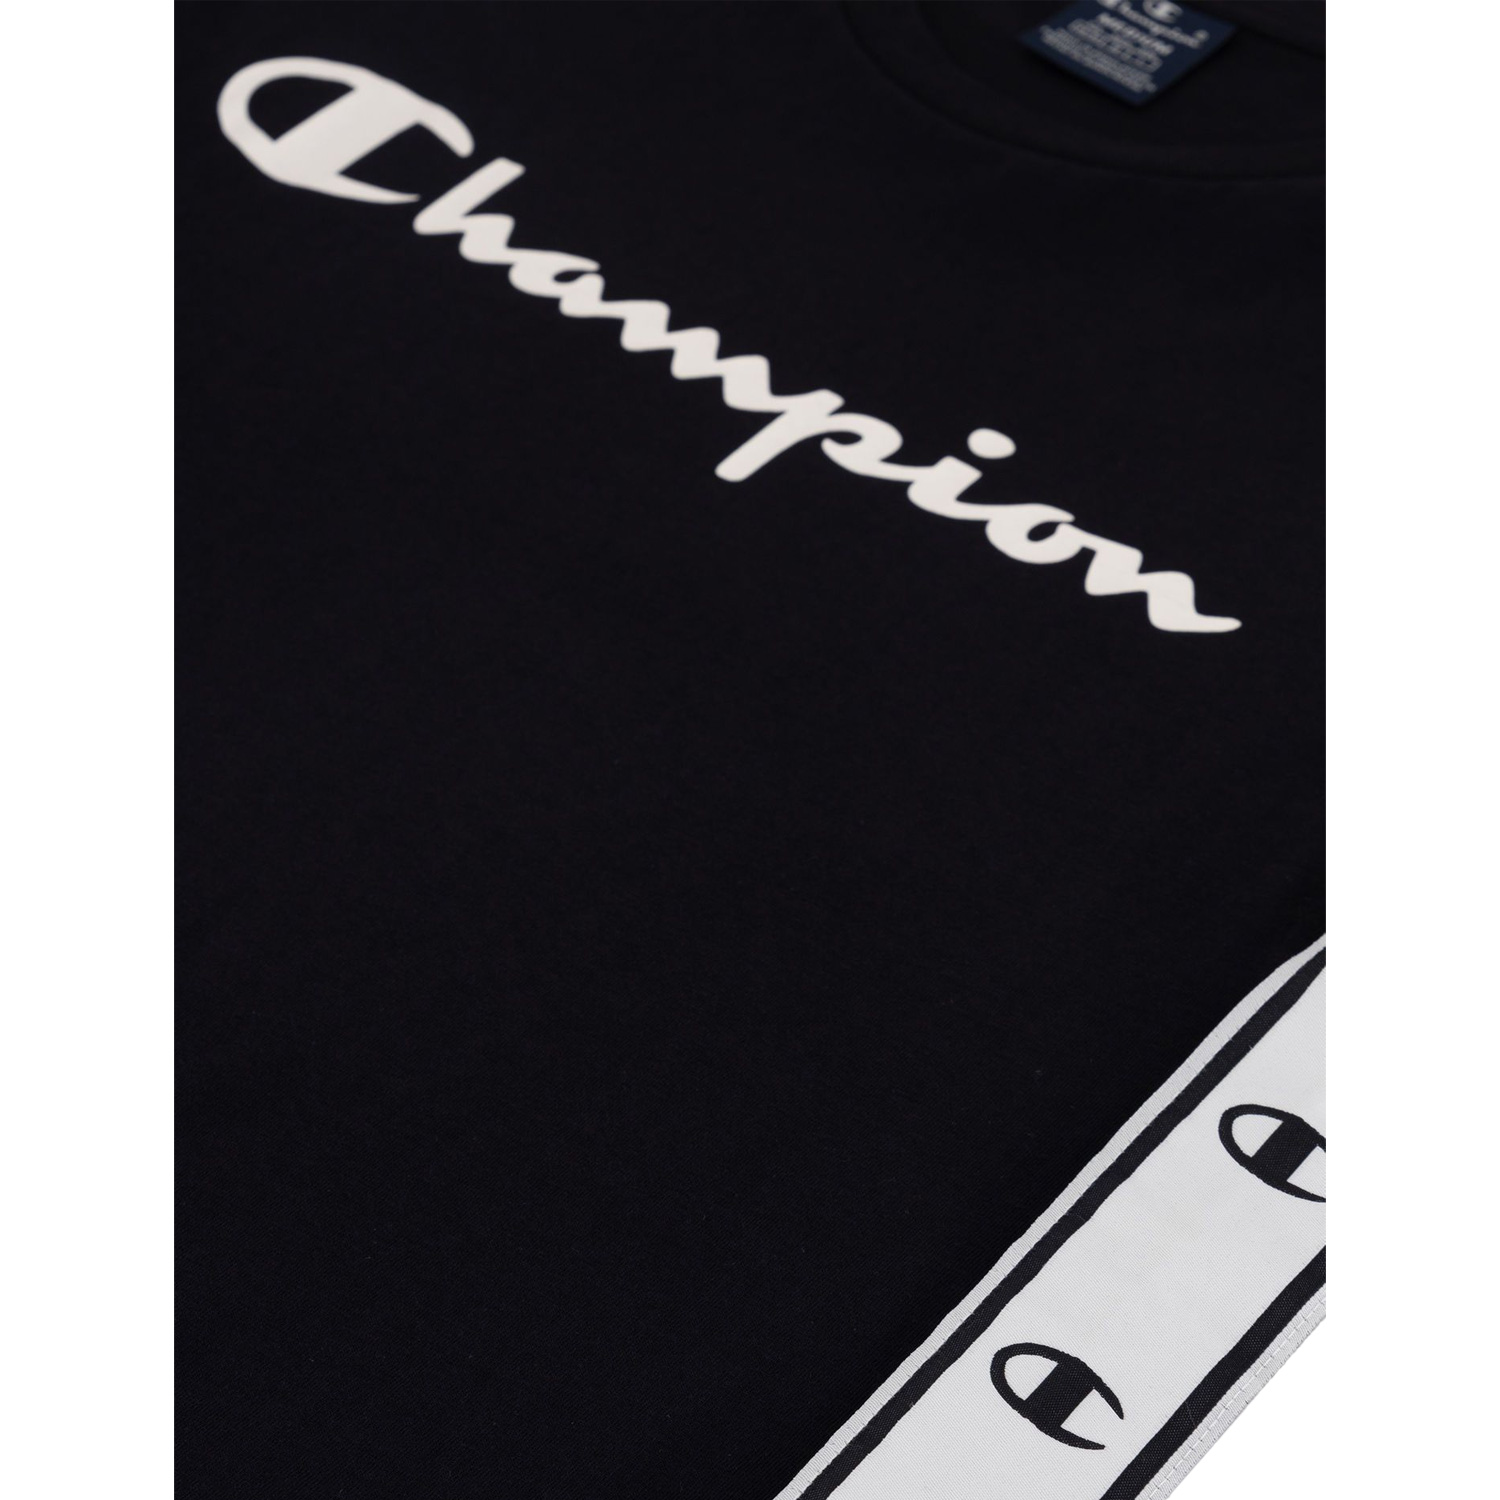 Champion Baumwoll-T-Shirt mit seitlichem Logoband schwarz